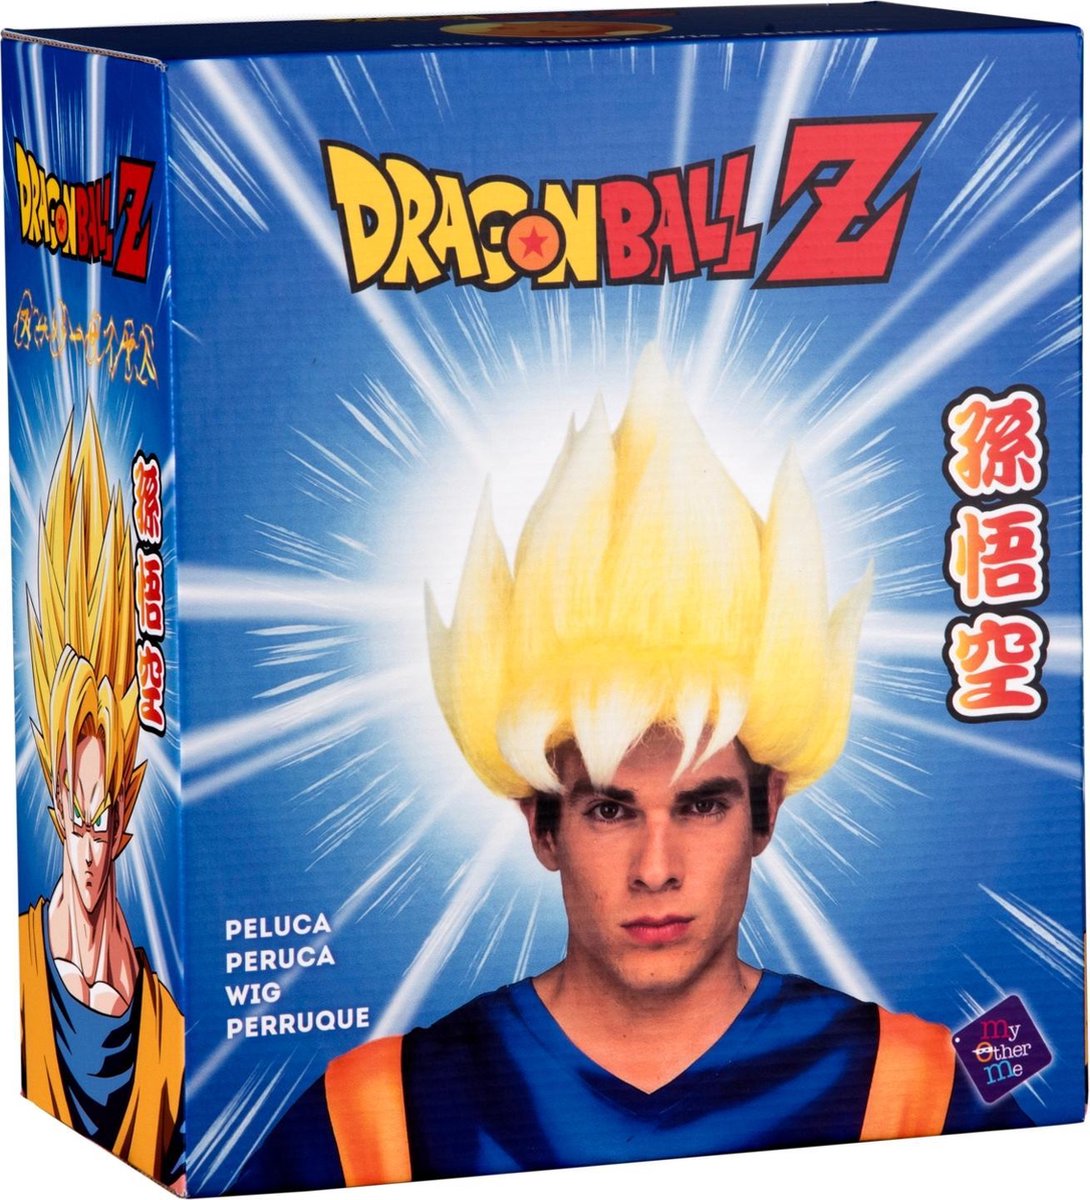 Déguisement Super Dragon Ball Z ™ Goku Saiyan pour enfant - Déguisements -  Taille 134/140